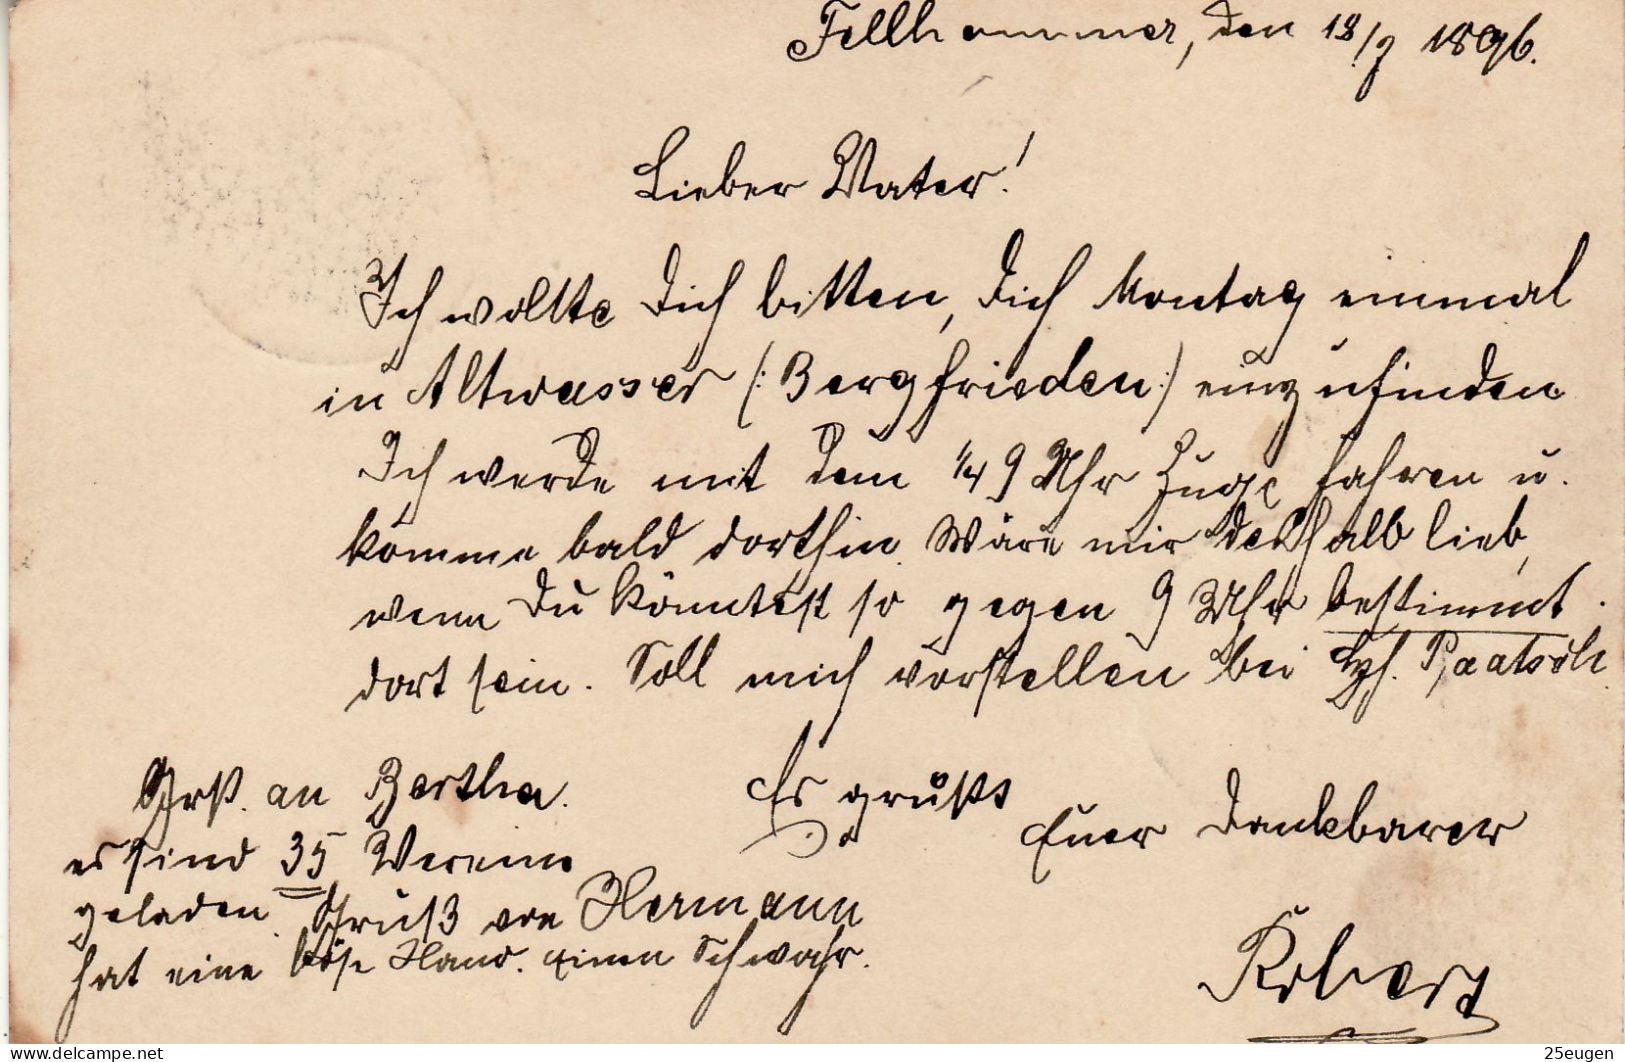 GERMANY EMPIRE 1896 POSTCARD  MiNr P 36 I SENT FROM FELLHAMMER /BOGUSZÓW/ TO NIEDER /SZCZAWIENKO/ - Briefe U. Dokumente